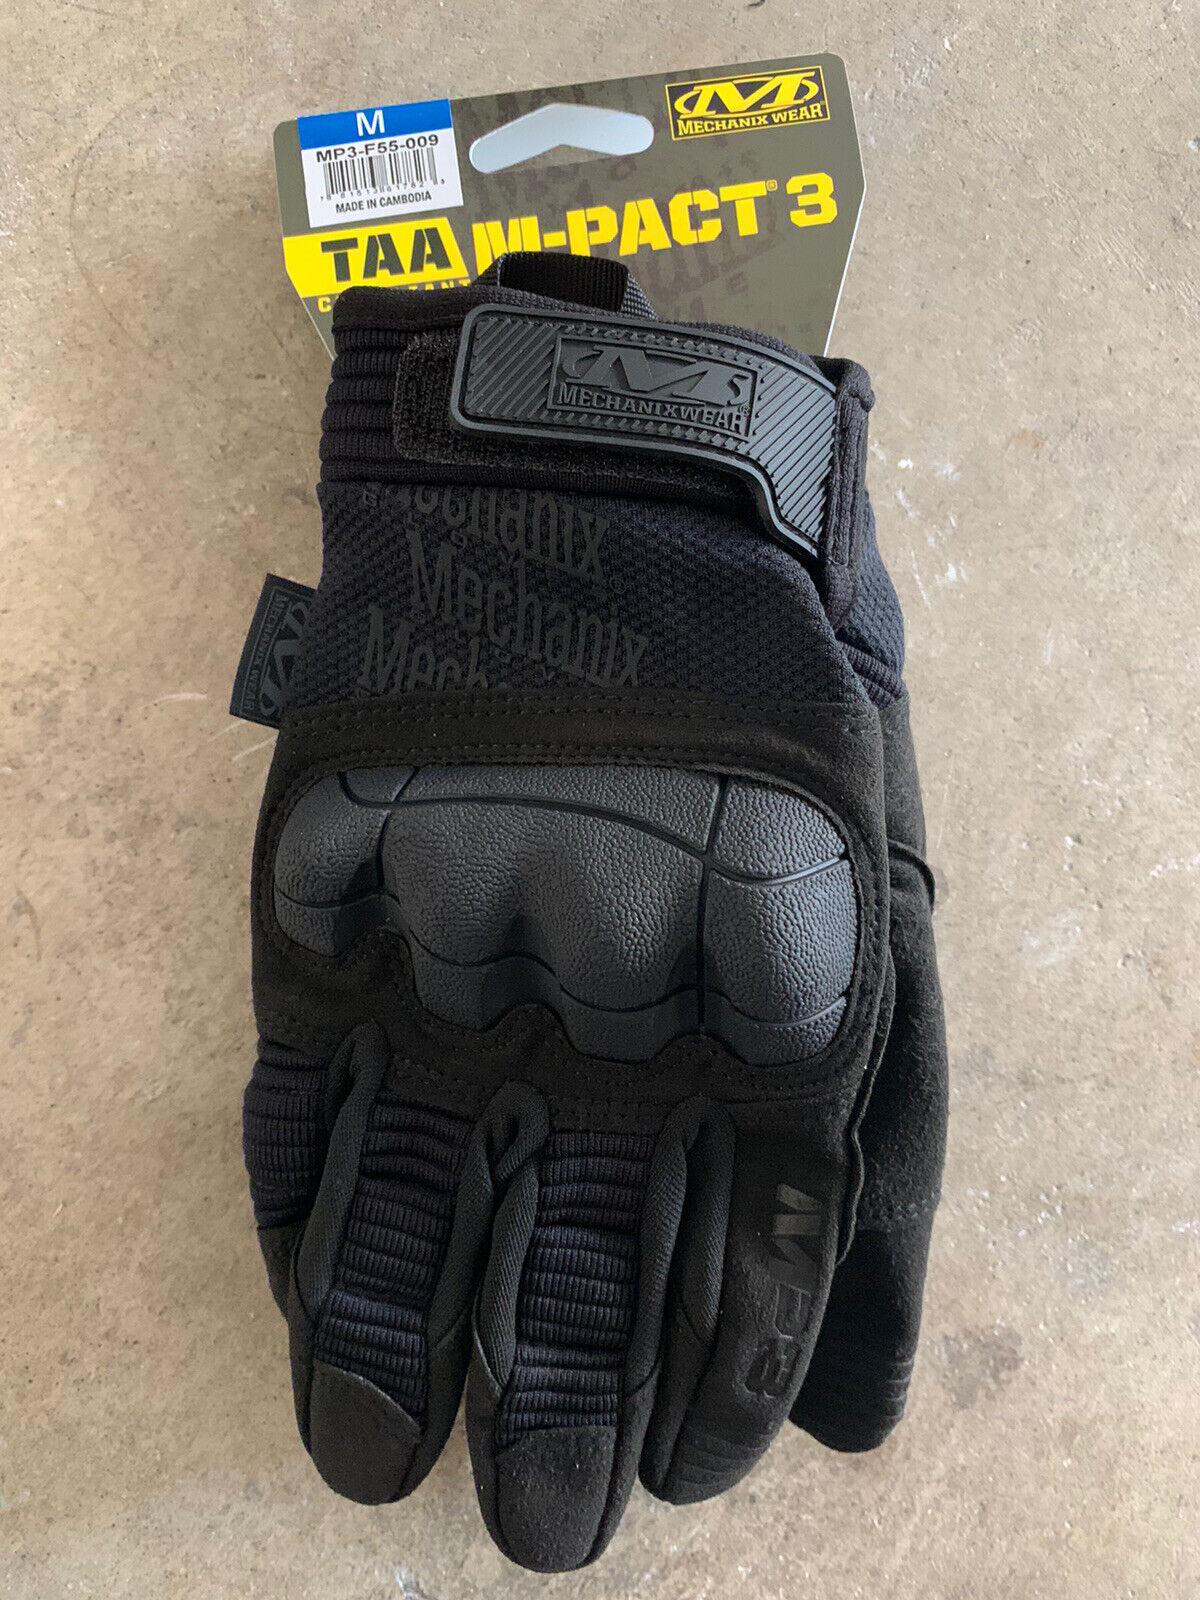 Medium Mechanix Wear M-Pact 3 Covert Tactical Work Gloves Medium All Black.